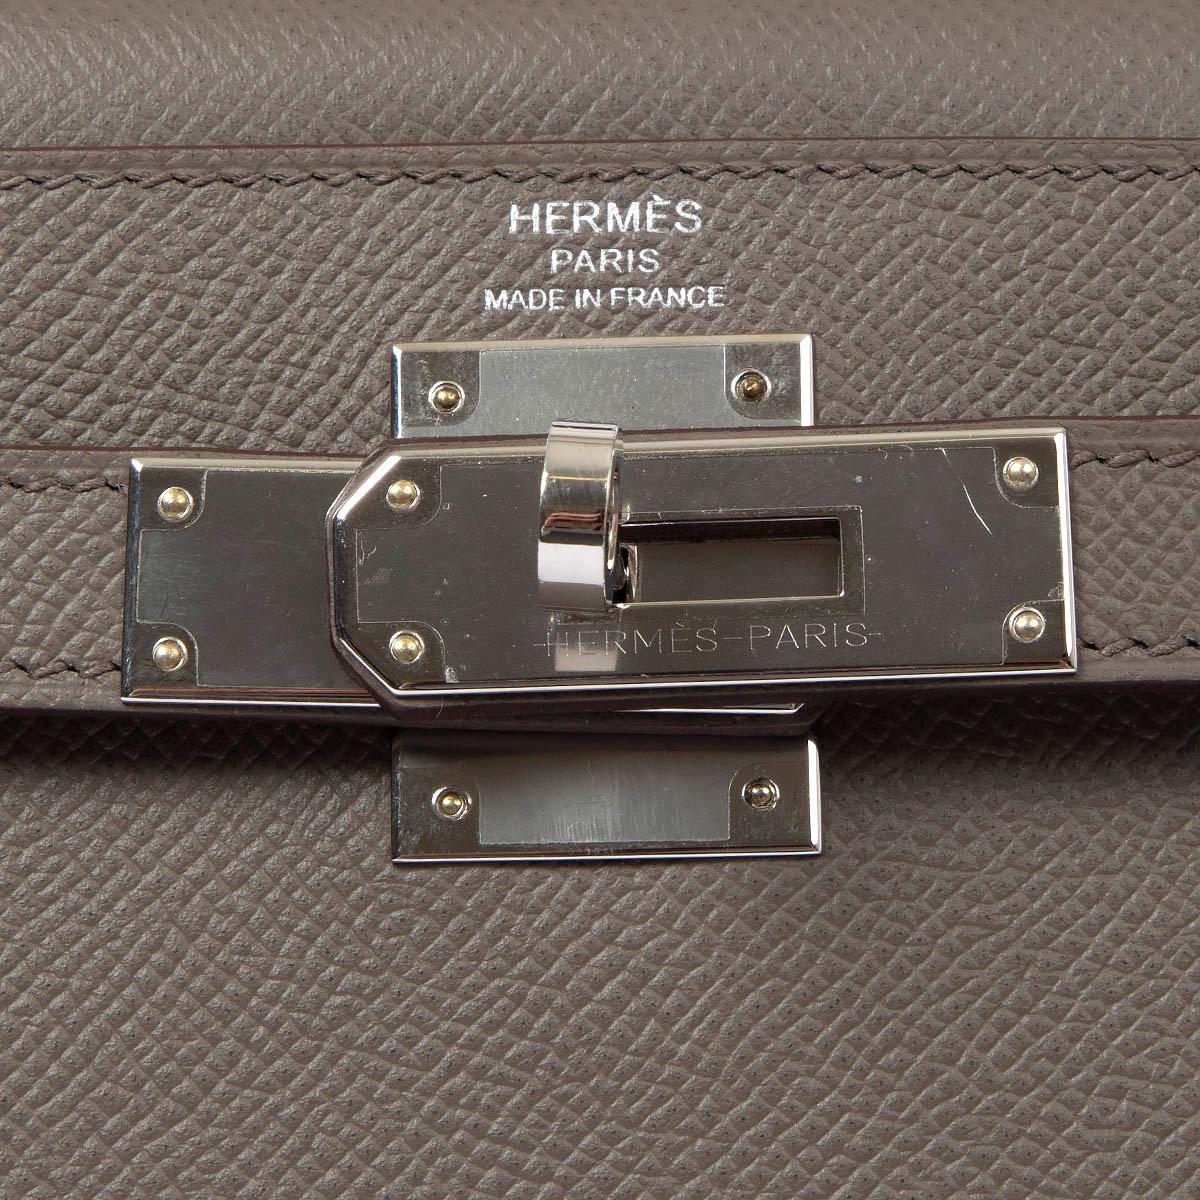 HERMES Etain grey Epsom leather KELLY 28 SELLIER Bag Phw 3